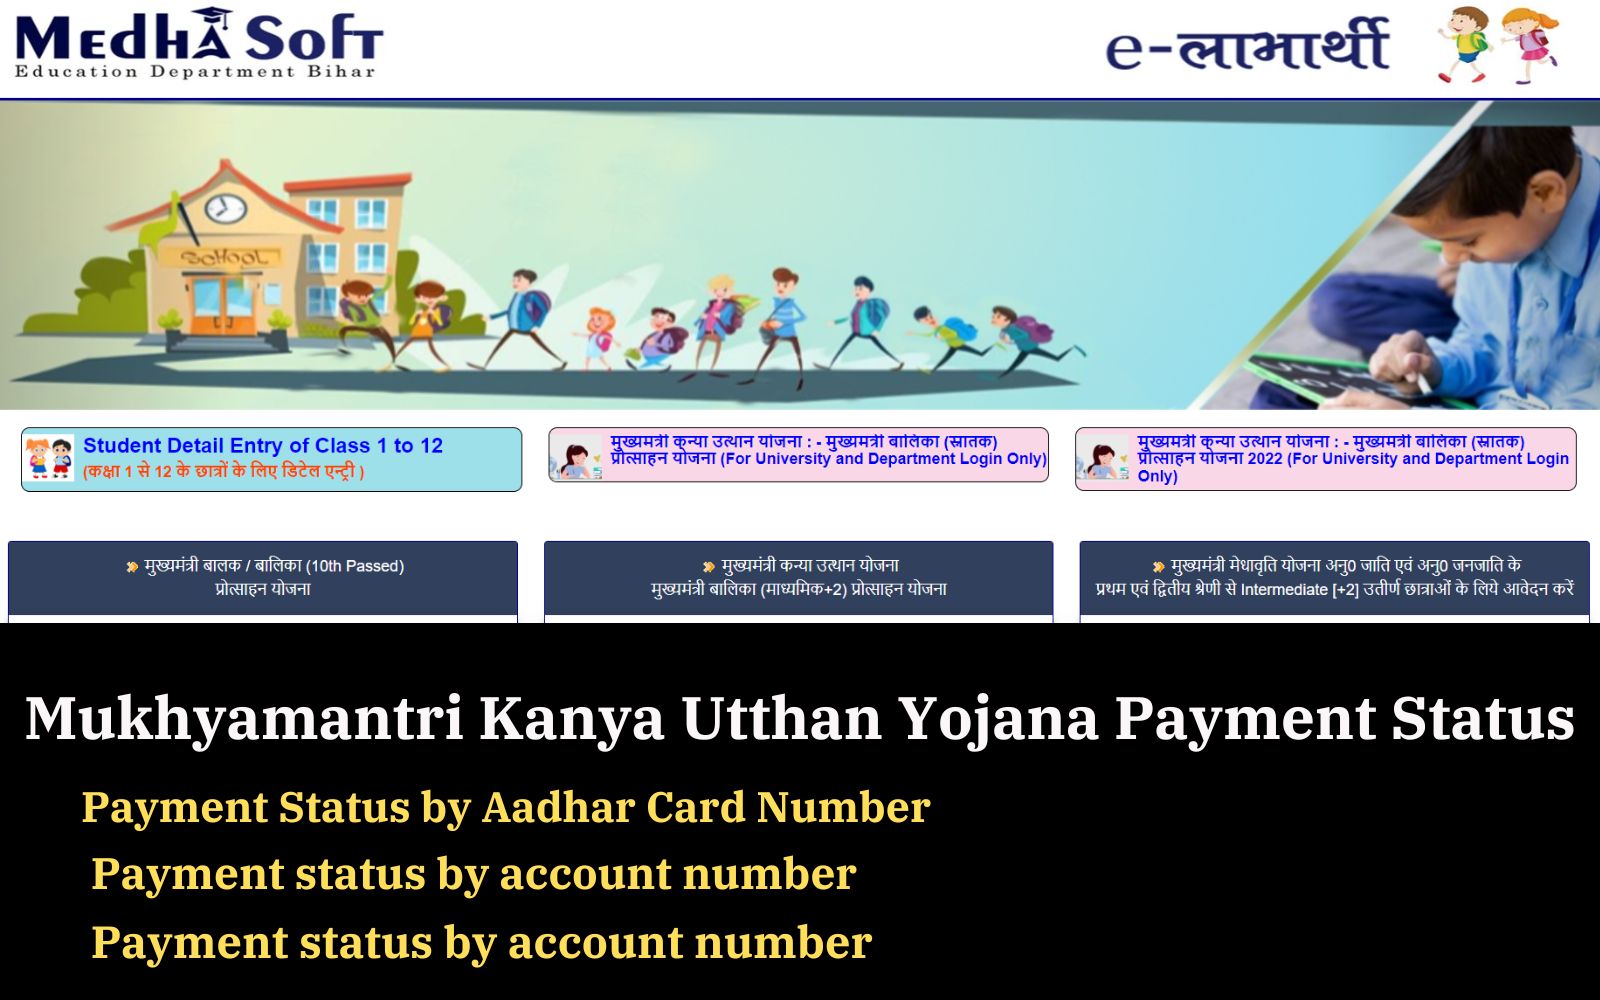 Mukhyamantri Kanya Utthan Yojana Payment Status